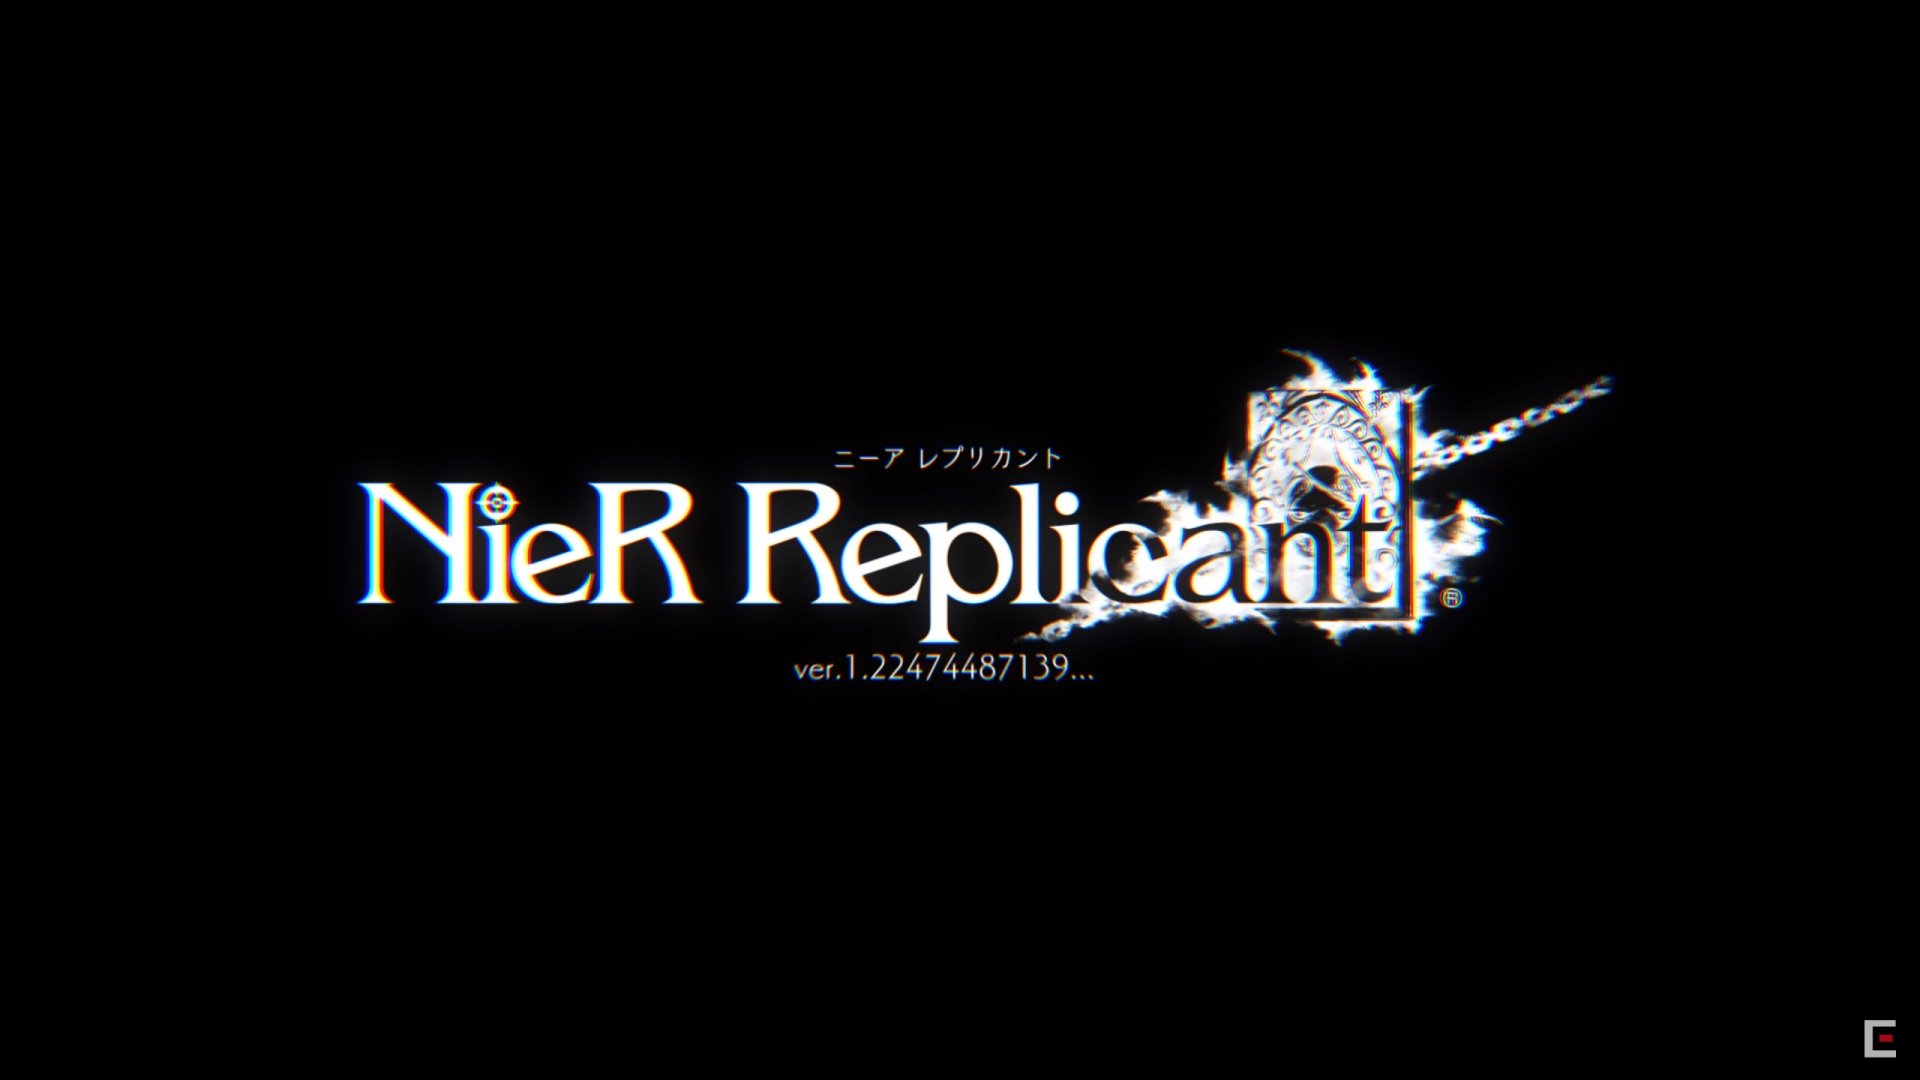 يأتي NieR Replicant Remaster إلى جهاز الكمبيوتر عبر Steam 176